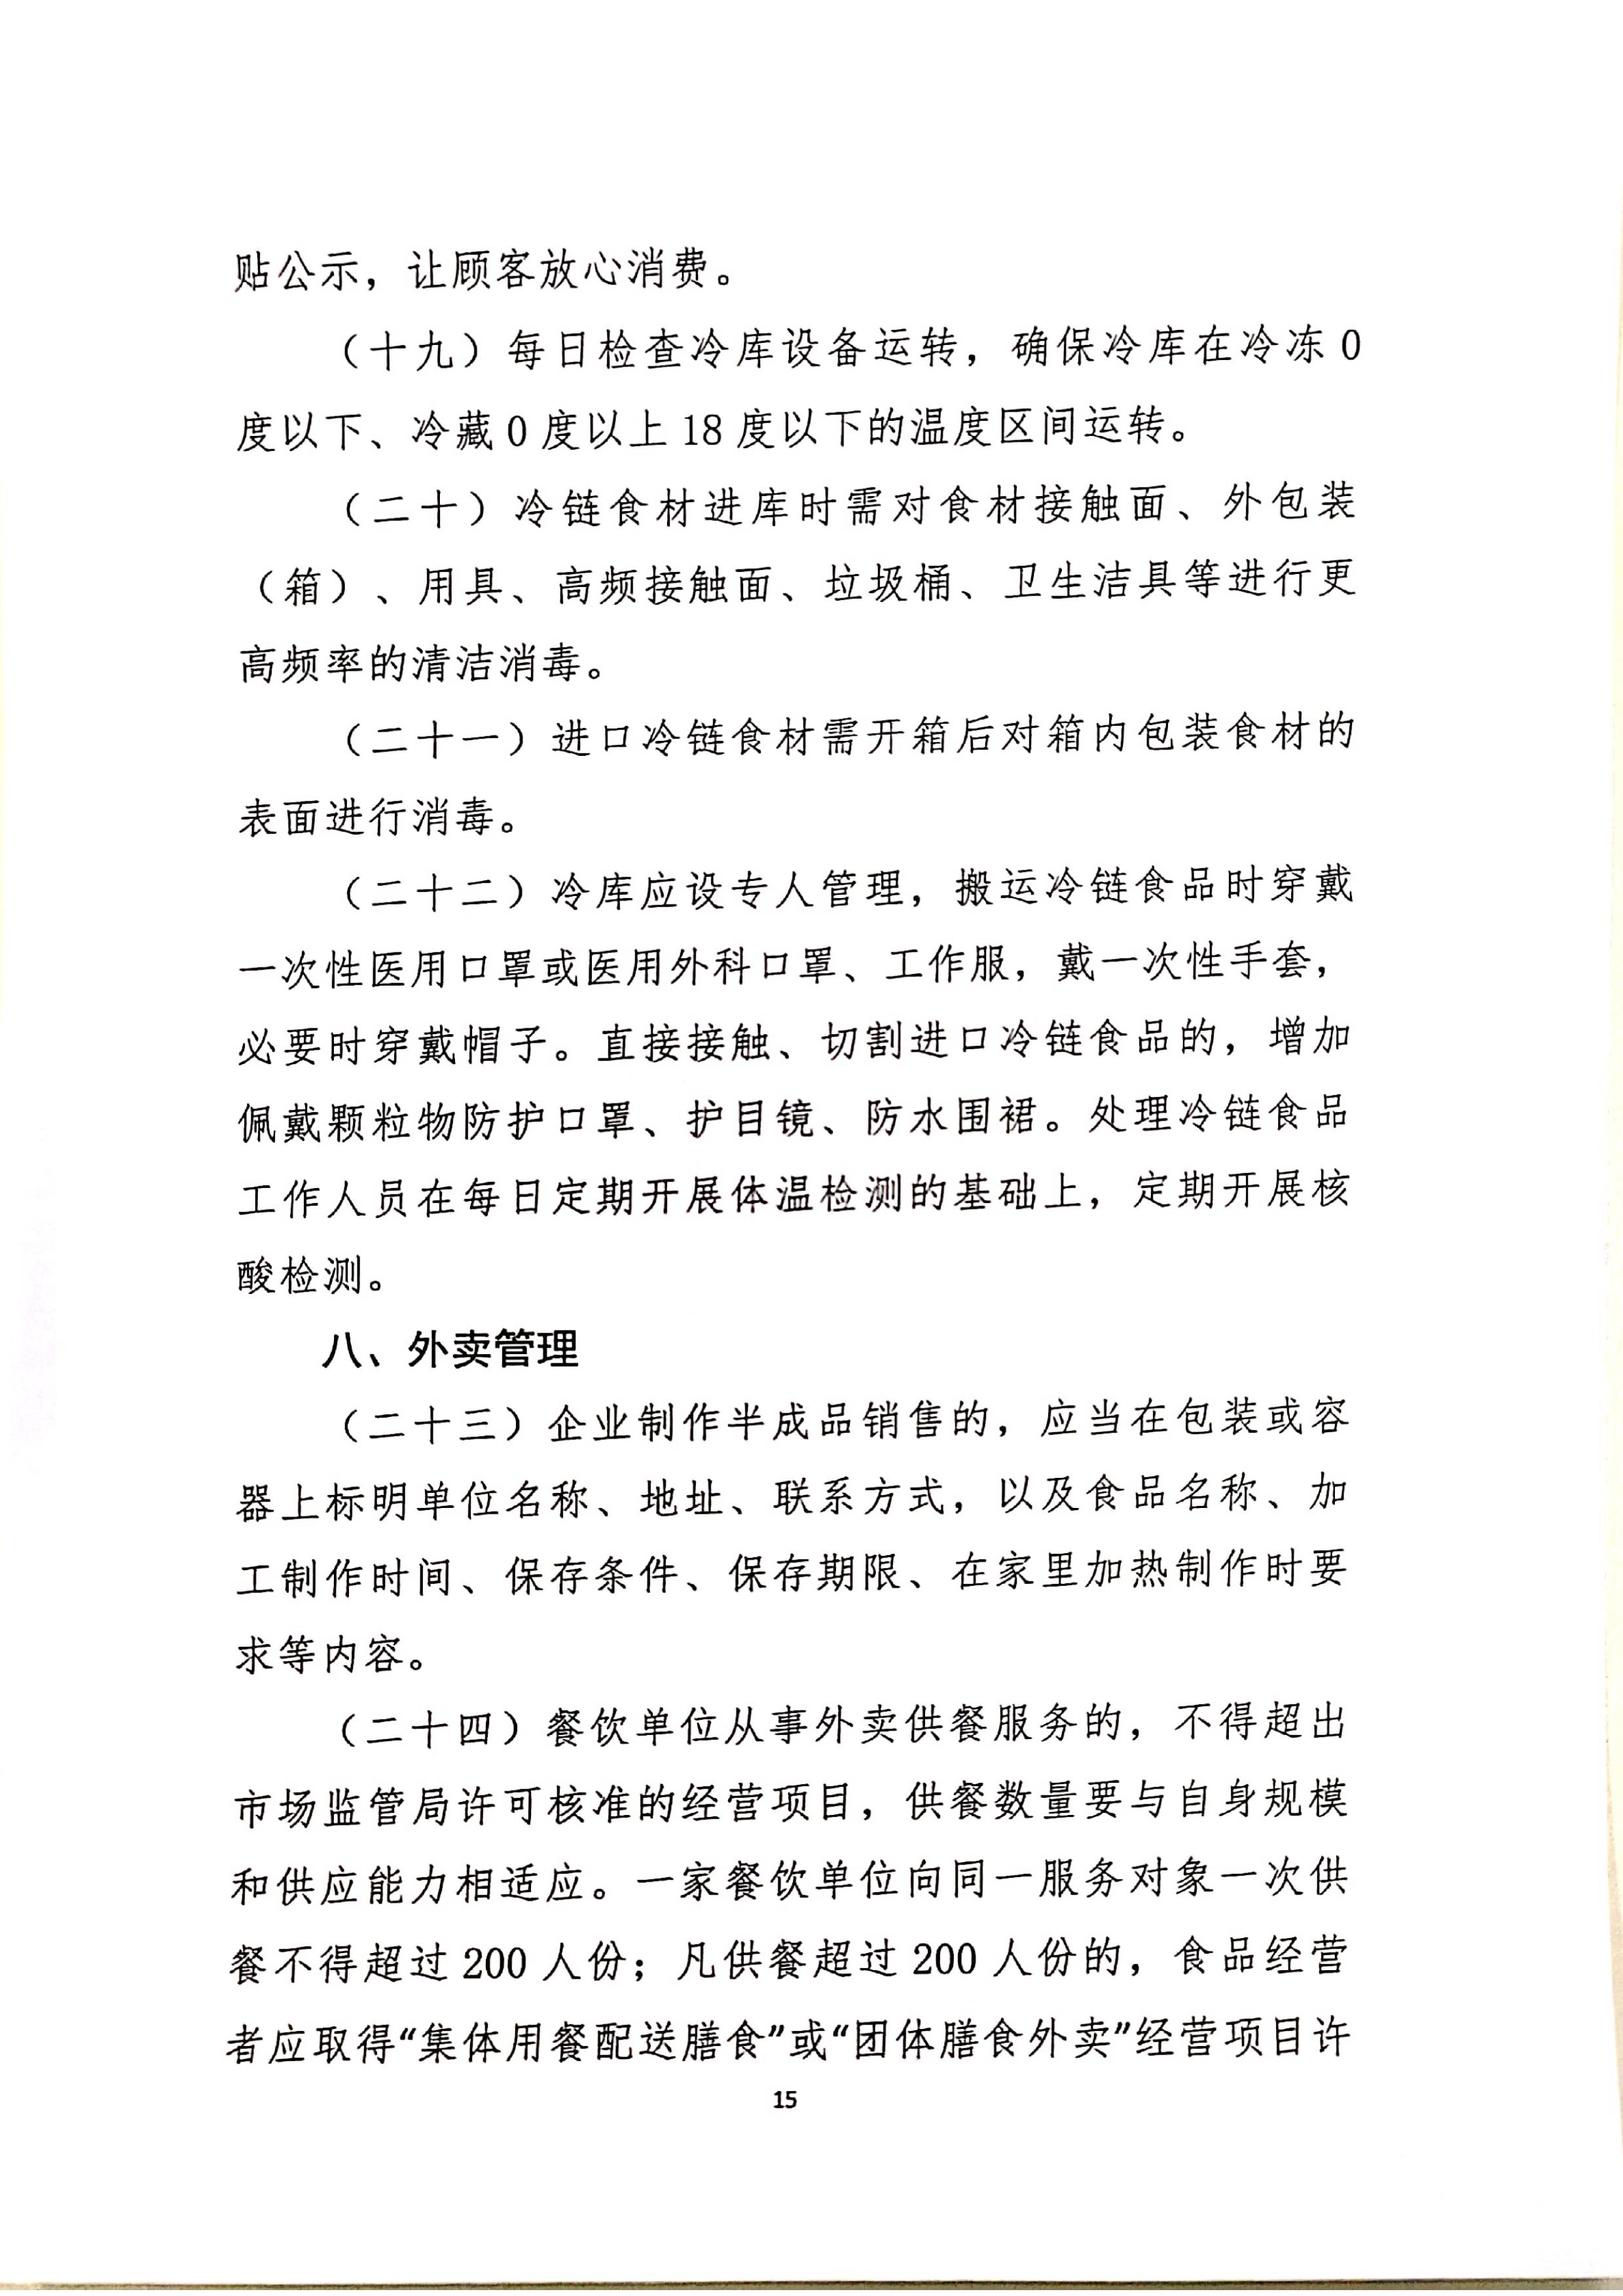 发文4号-关于印发《上海市商场、超市疫情防控技术指南》等4个指南的通知_15.jpg